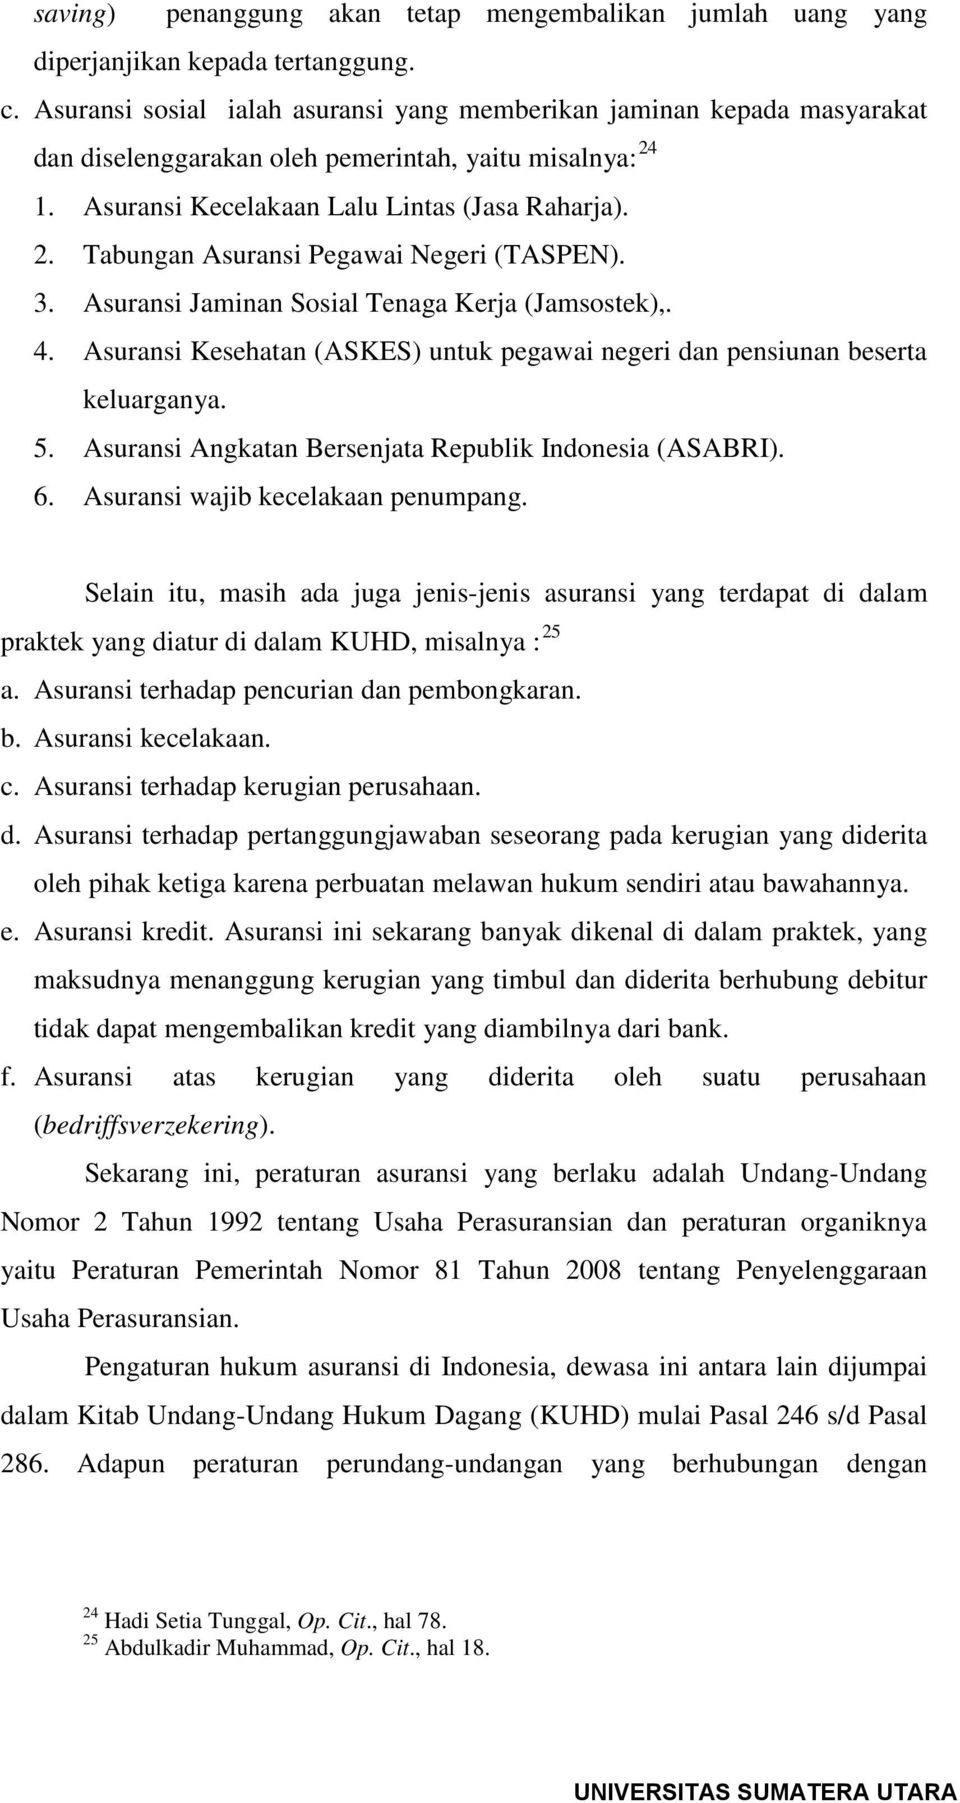 3. Asuransi Jaminan Sosial Tenaga Kerja (Jamsostek),. 4. Asuransi Kesehatan (ASKES) untuk pegawai negeri dan pensiunan beserta keluarganya. 5. Asuransi Angkatan Bersenjata Republik Indonesia (ASABRI).